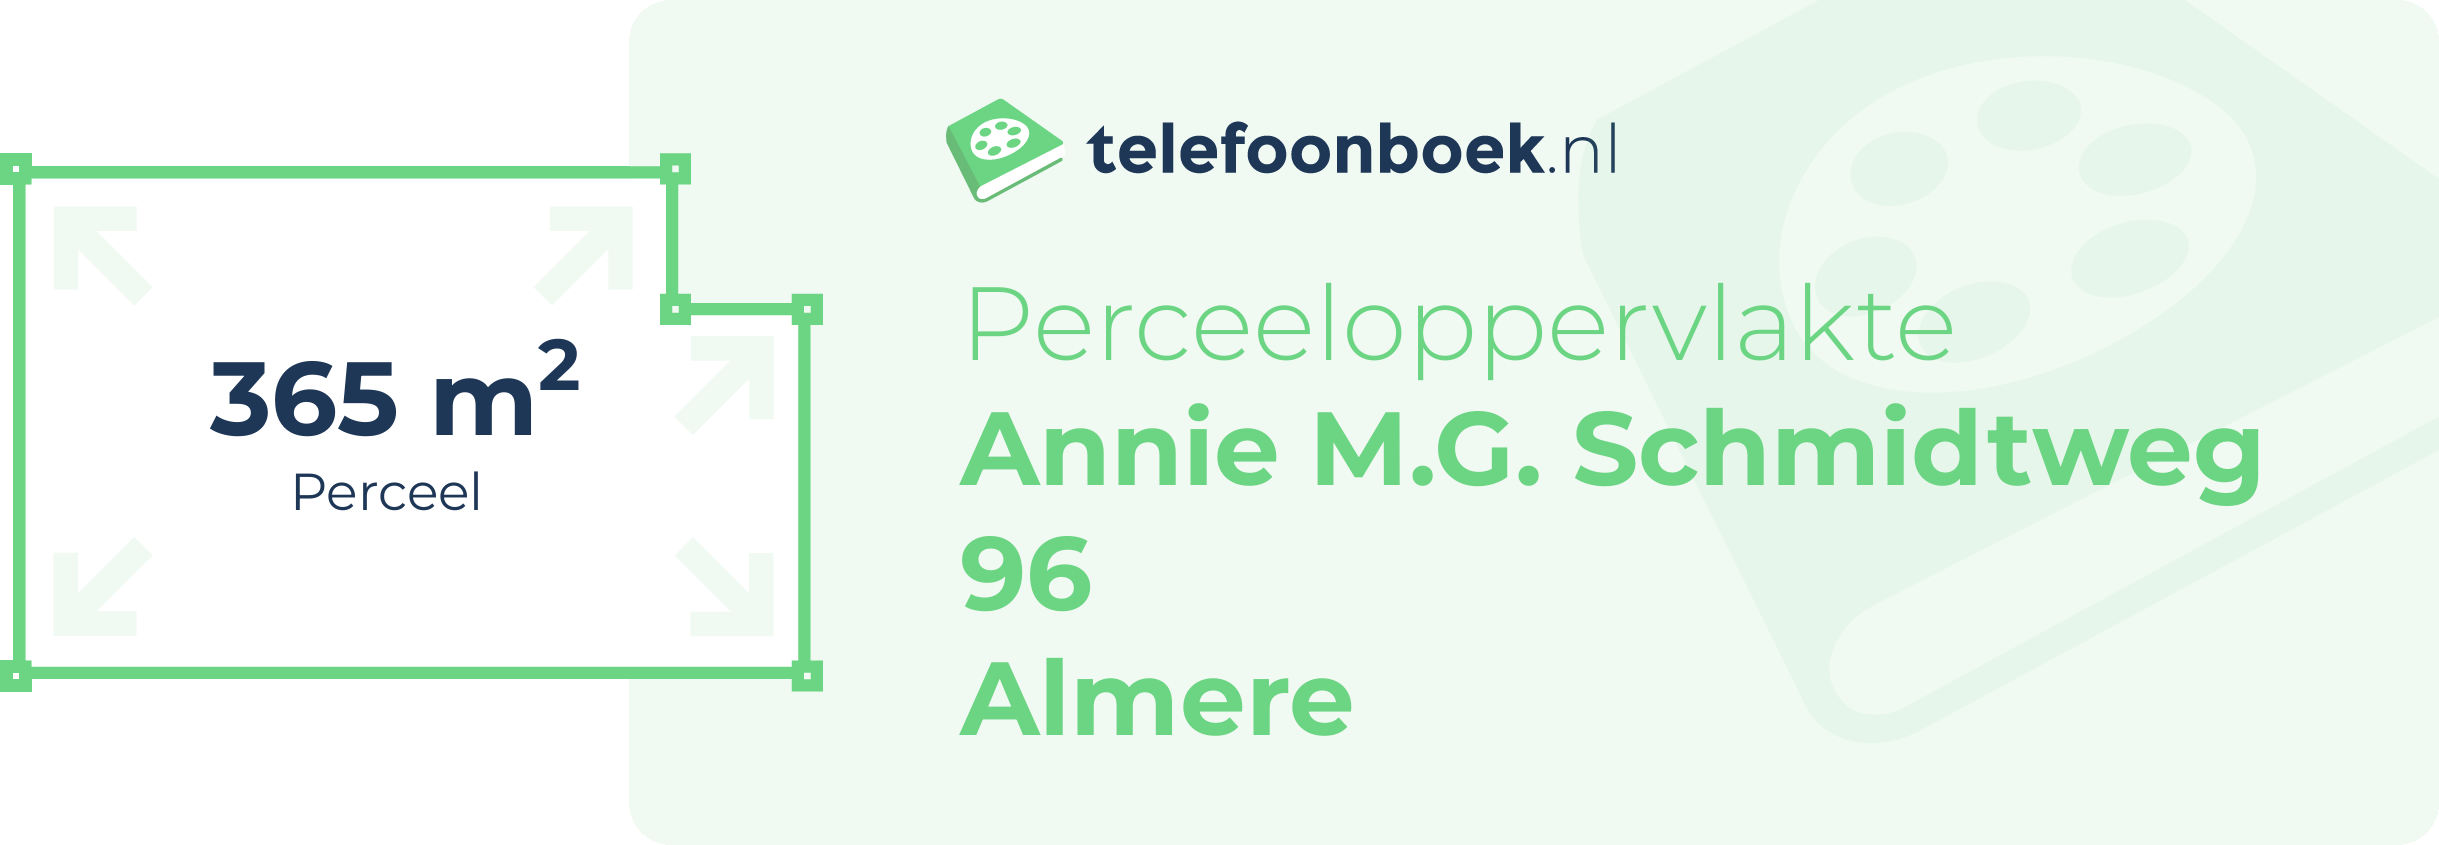 Perceeloppervlakte Annie M.G. Schmidtweg 96 Almere